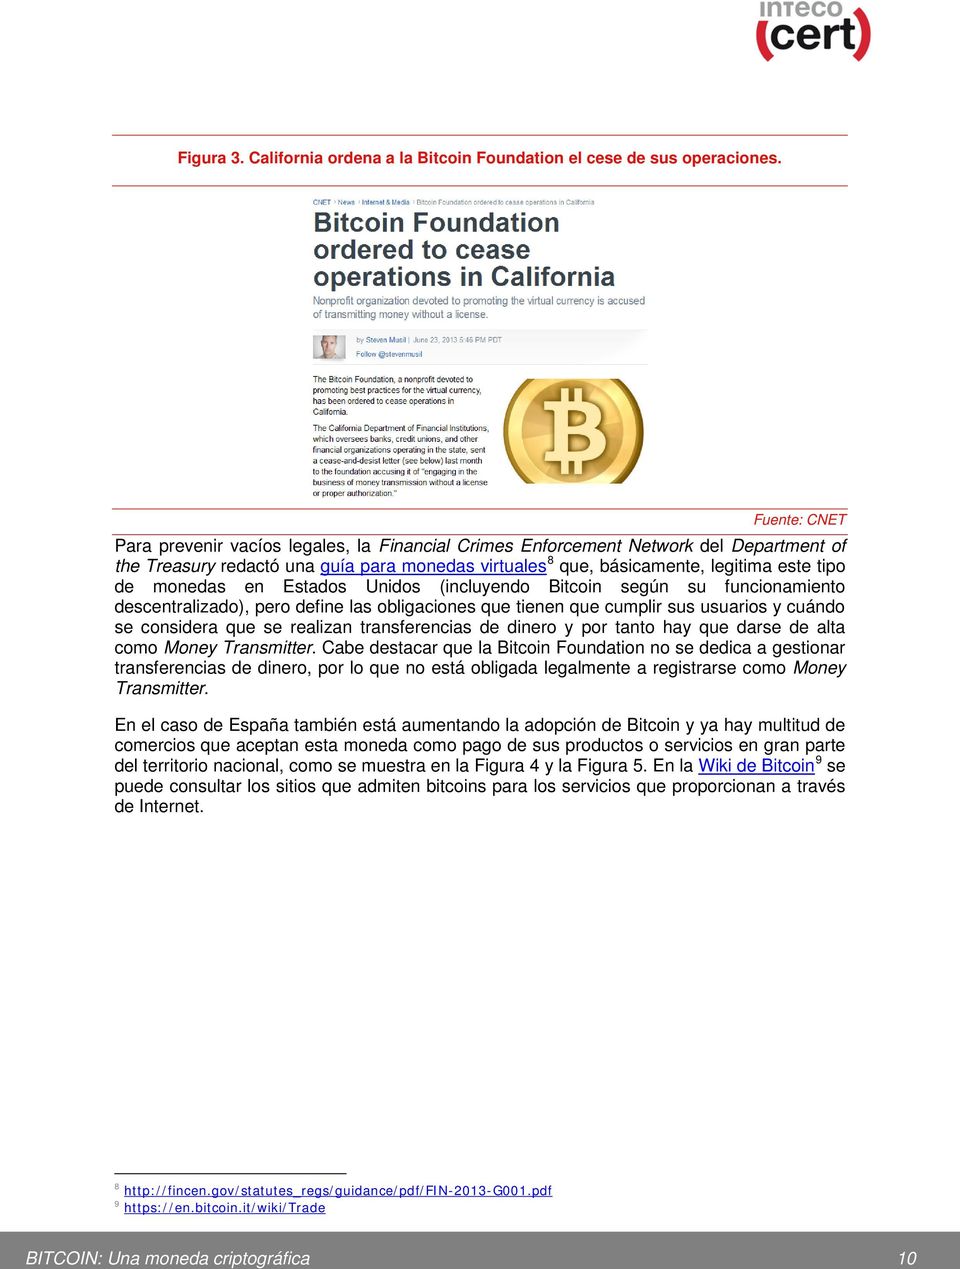 monedas en Estados Unidos (incluyendo Bitcoin según su funcionamiento descentralizado), pero define las obligaciones que tienen que cumplir sus usuarios y cuándo se considera que se realizan